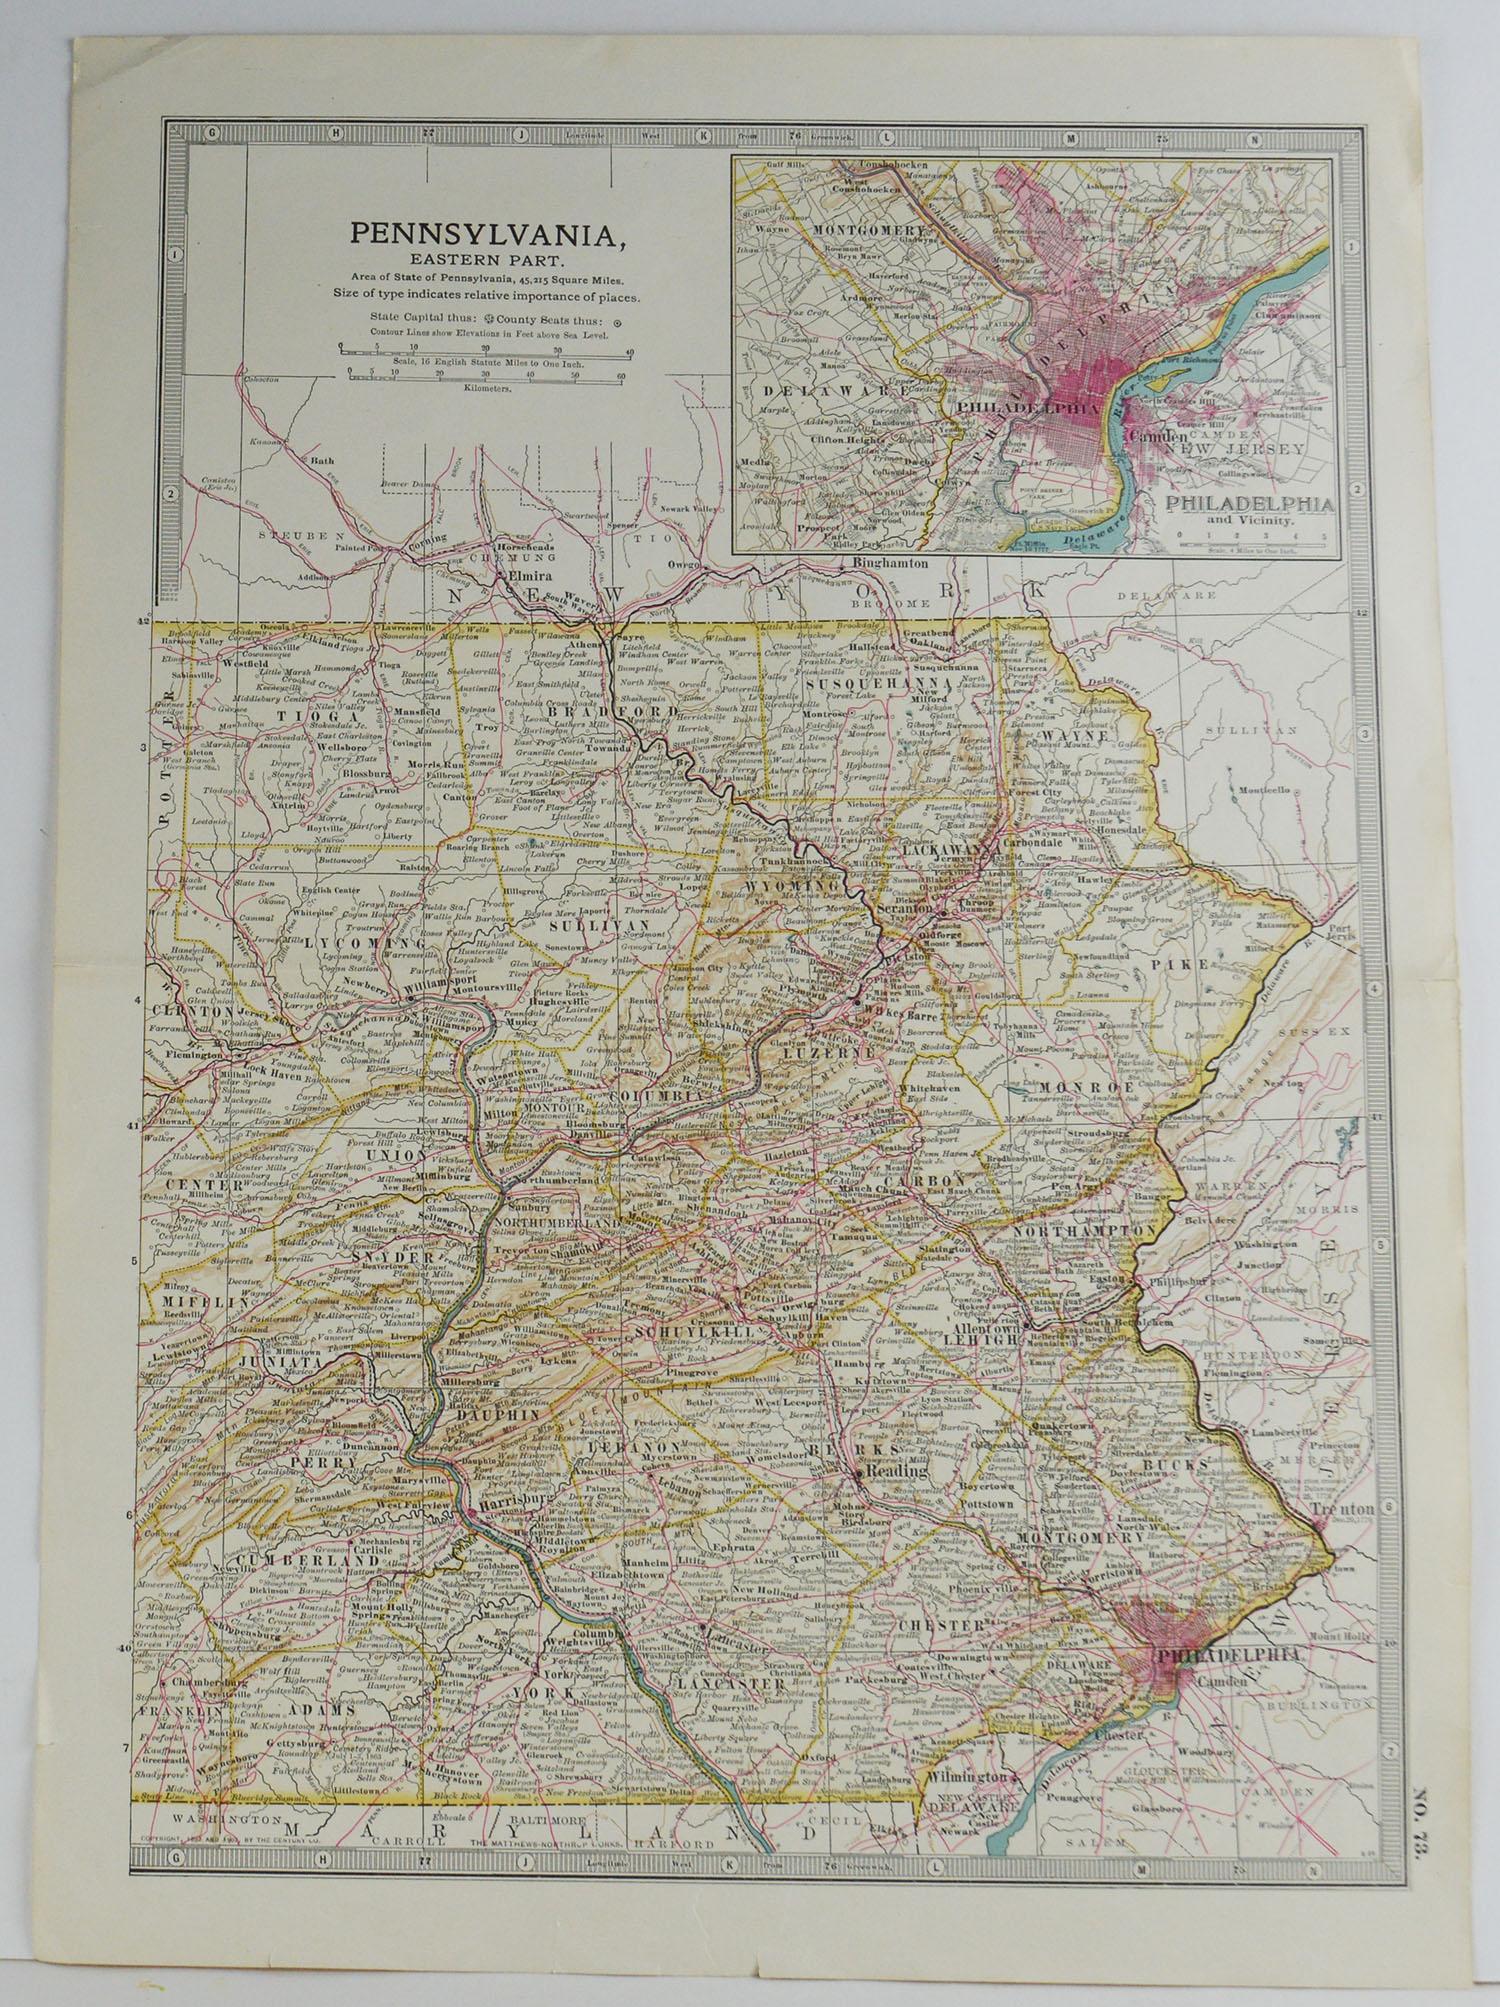 English Original Antique Map of Pennsylvania, circa 1890